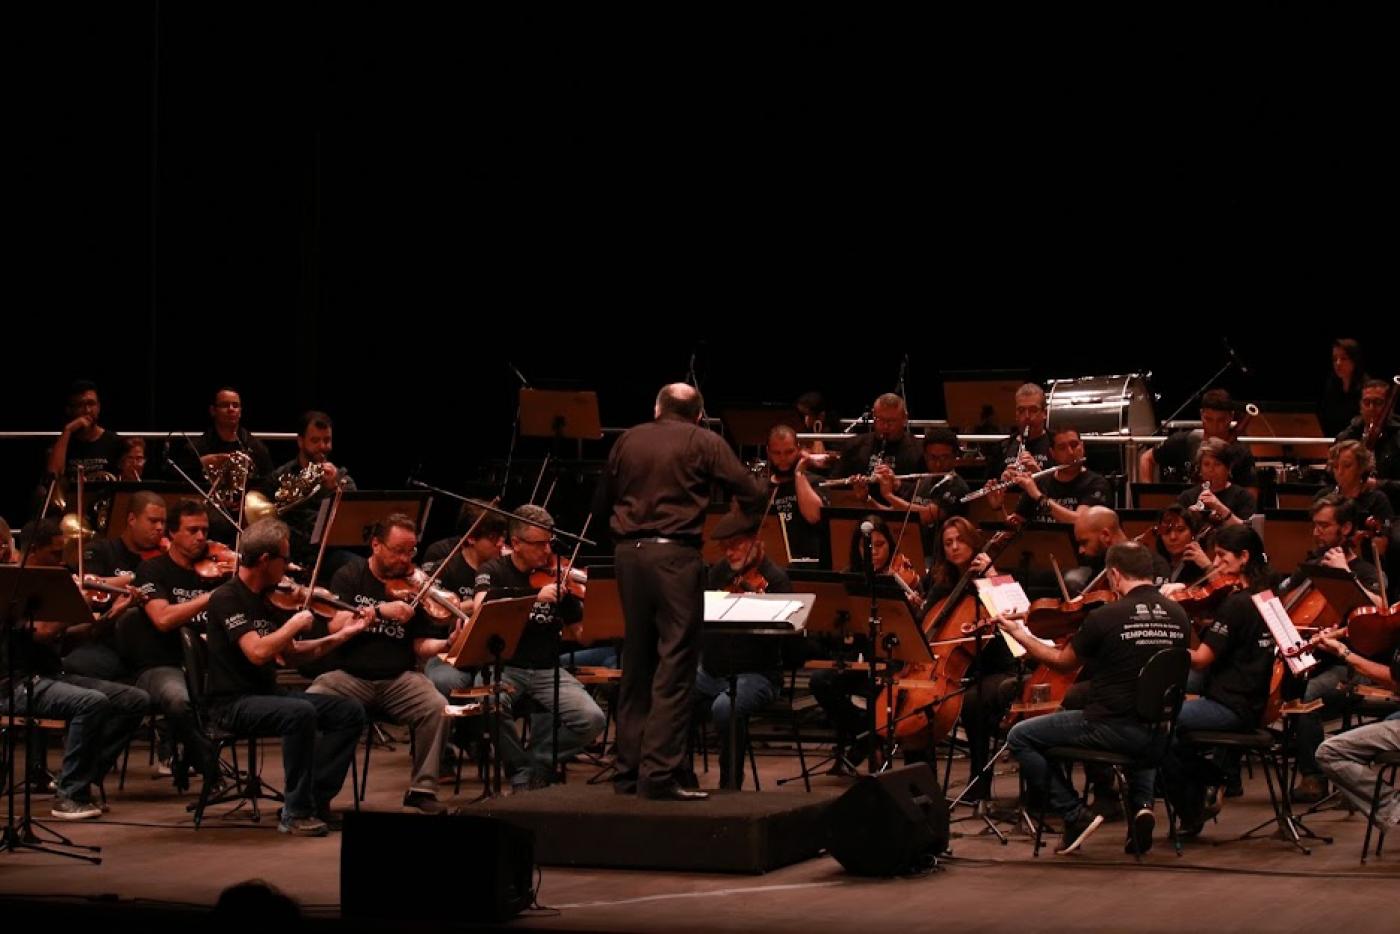 Orquestra sinfônica se apresenta em palco. Maestro está à frente do grupo, de costas para a imagem. #paratodosverem